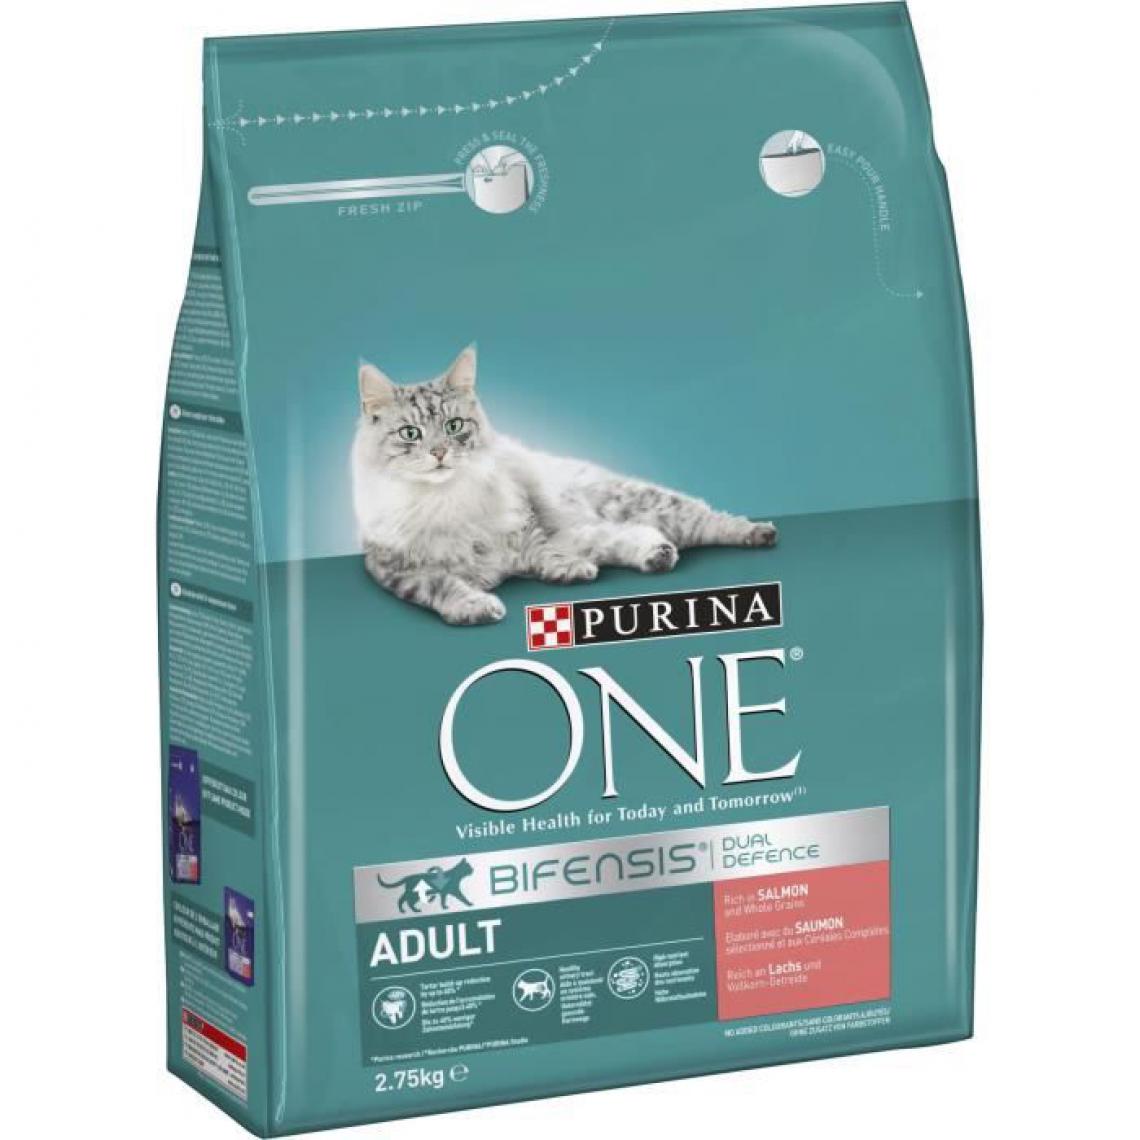 Purina One - PURINA ONE Croquettes pour chat adulte au Saumon et Céréales Complètes - 4 x 2,75 kg - Croquettes pour chien